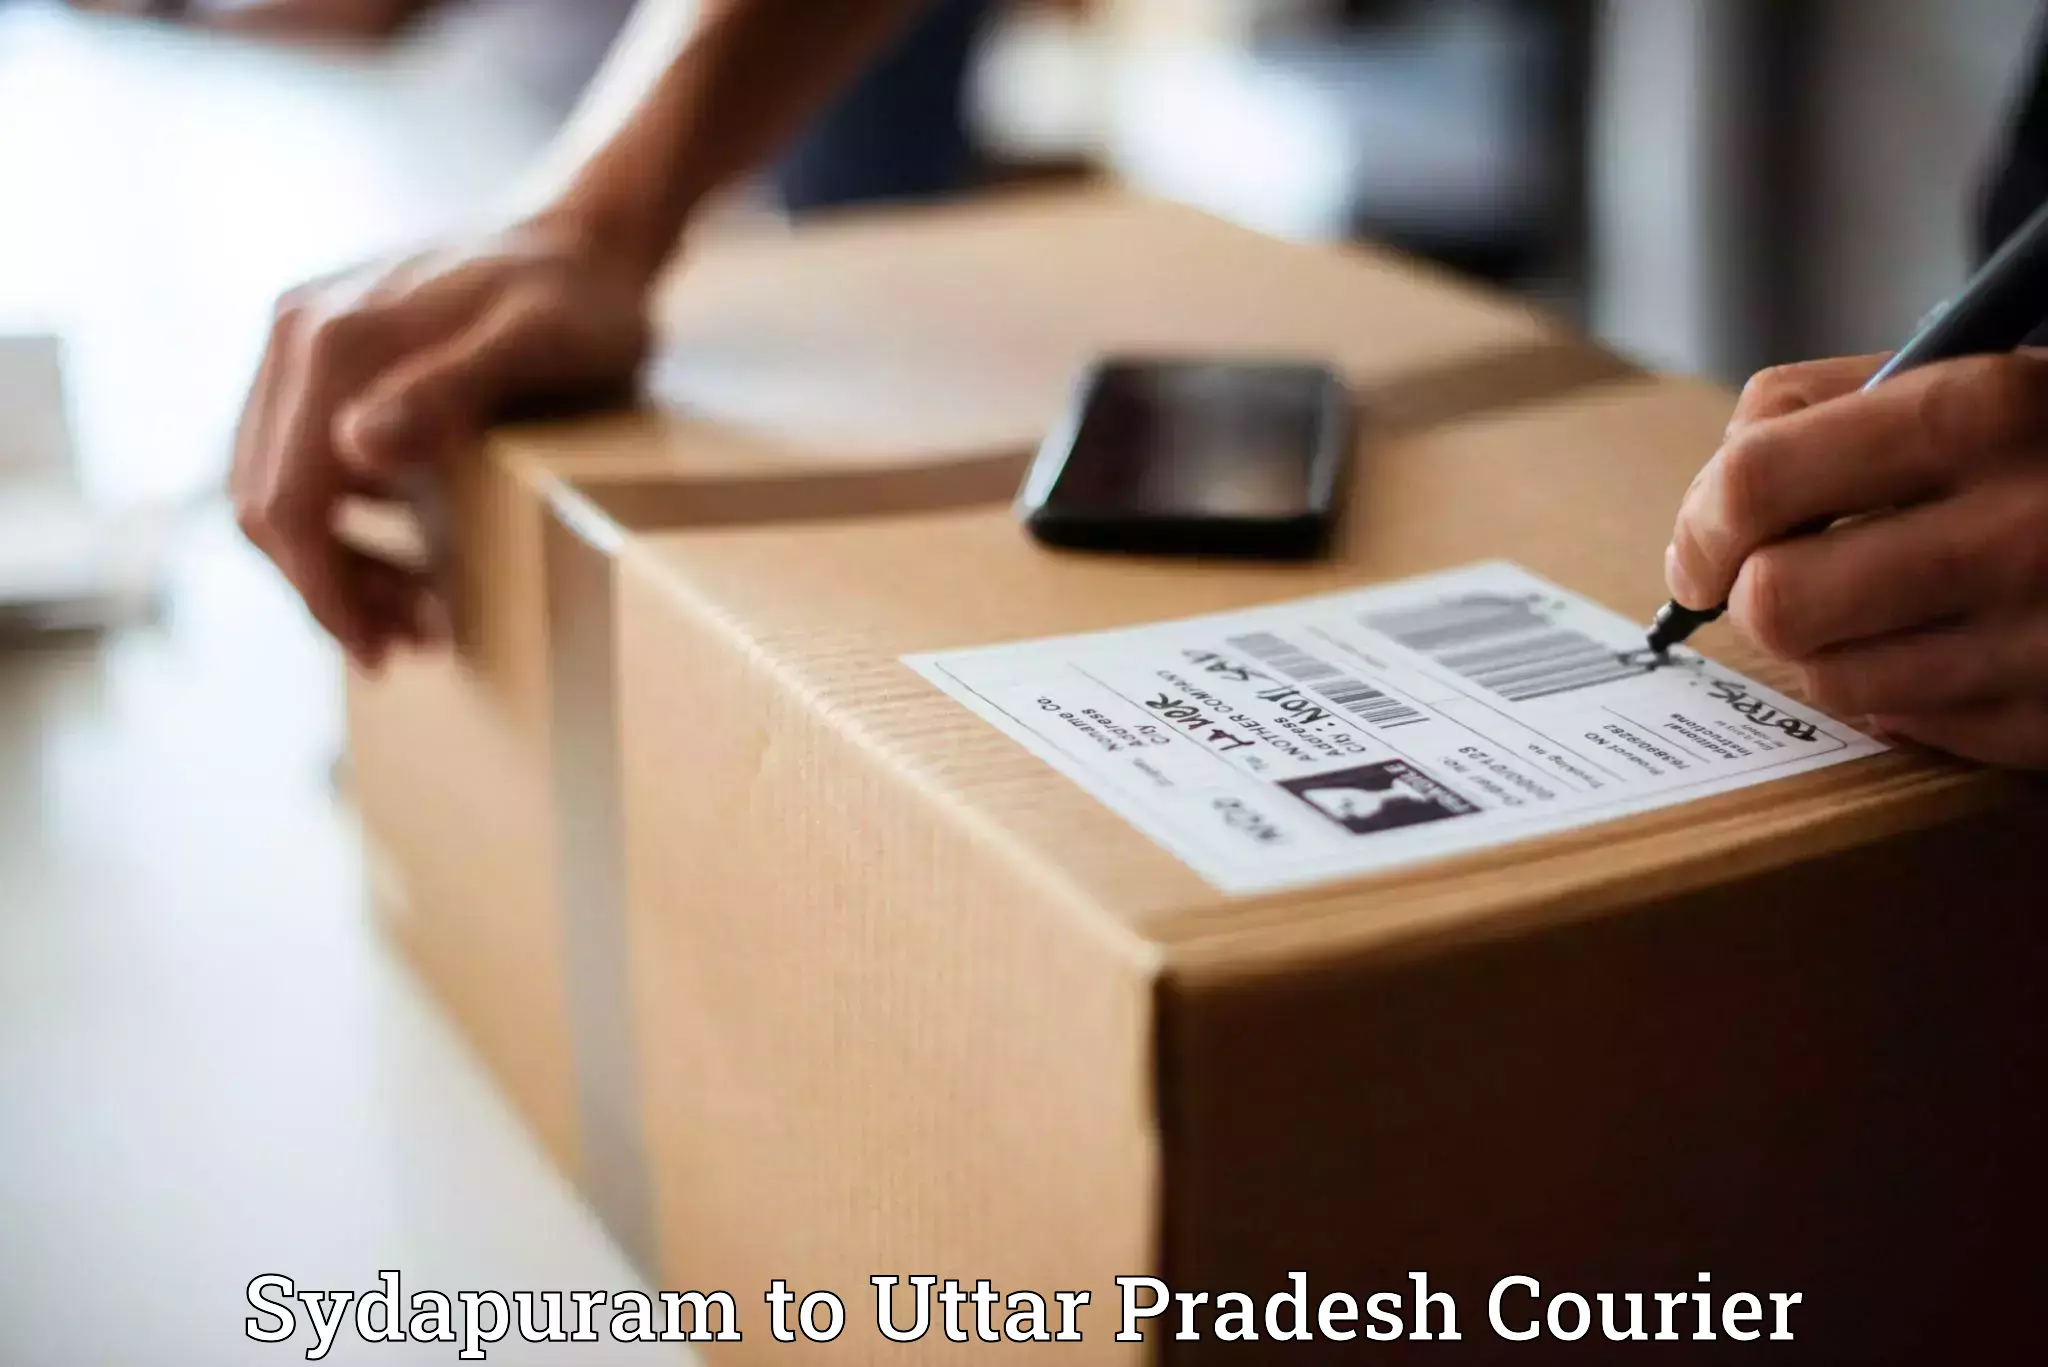 Efficient parcel service Sydapuram to IIT Kanpur